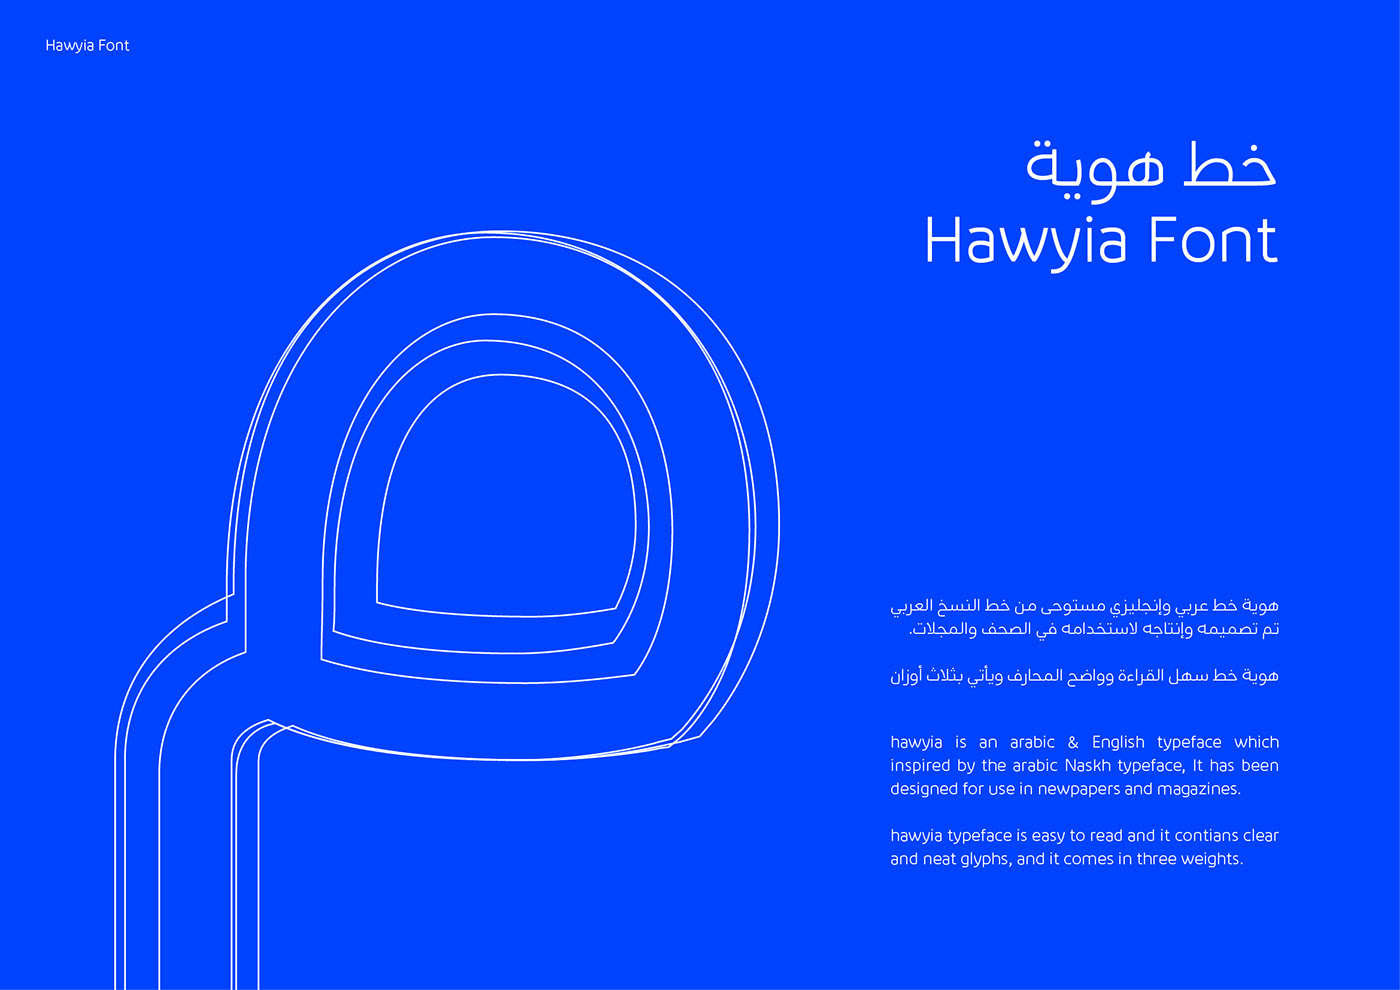 Hawyia Typeface